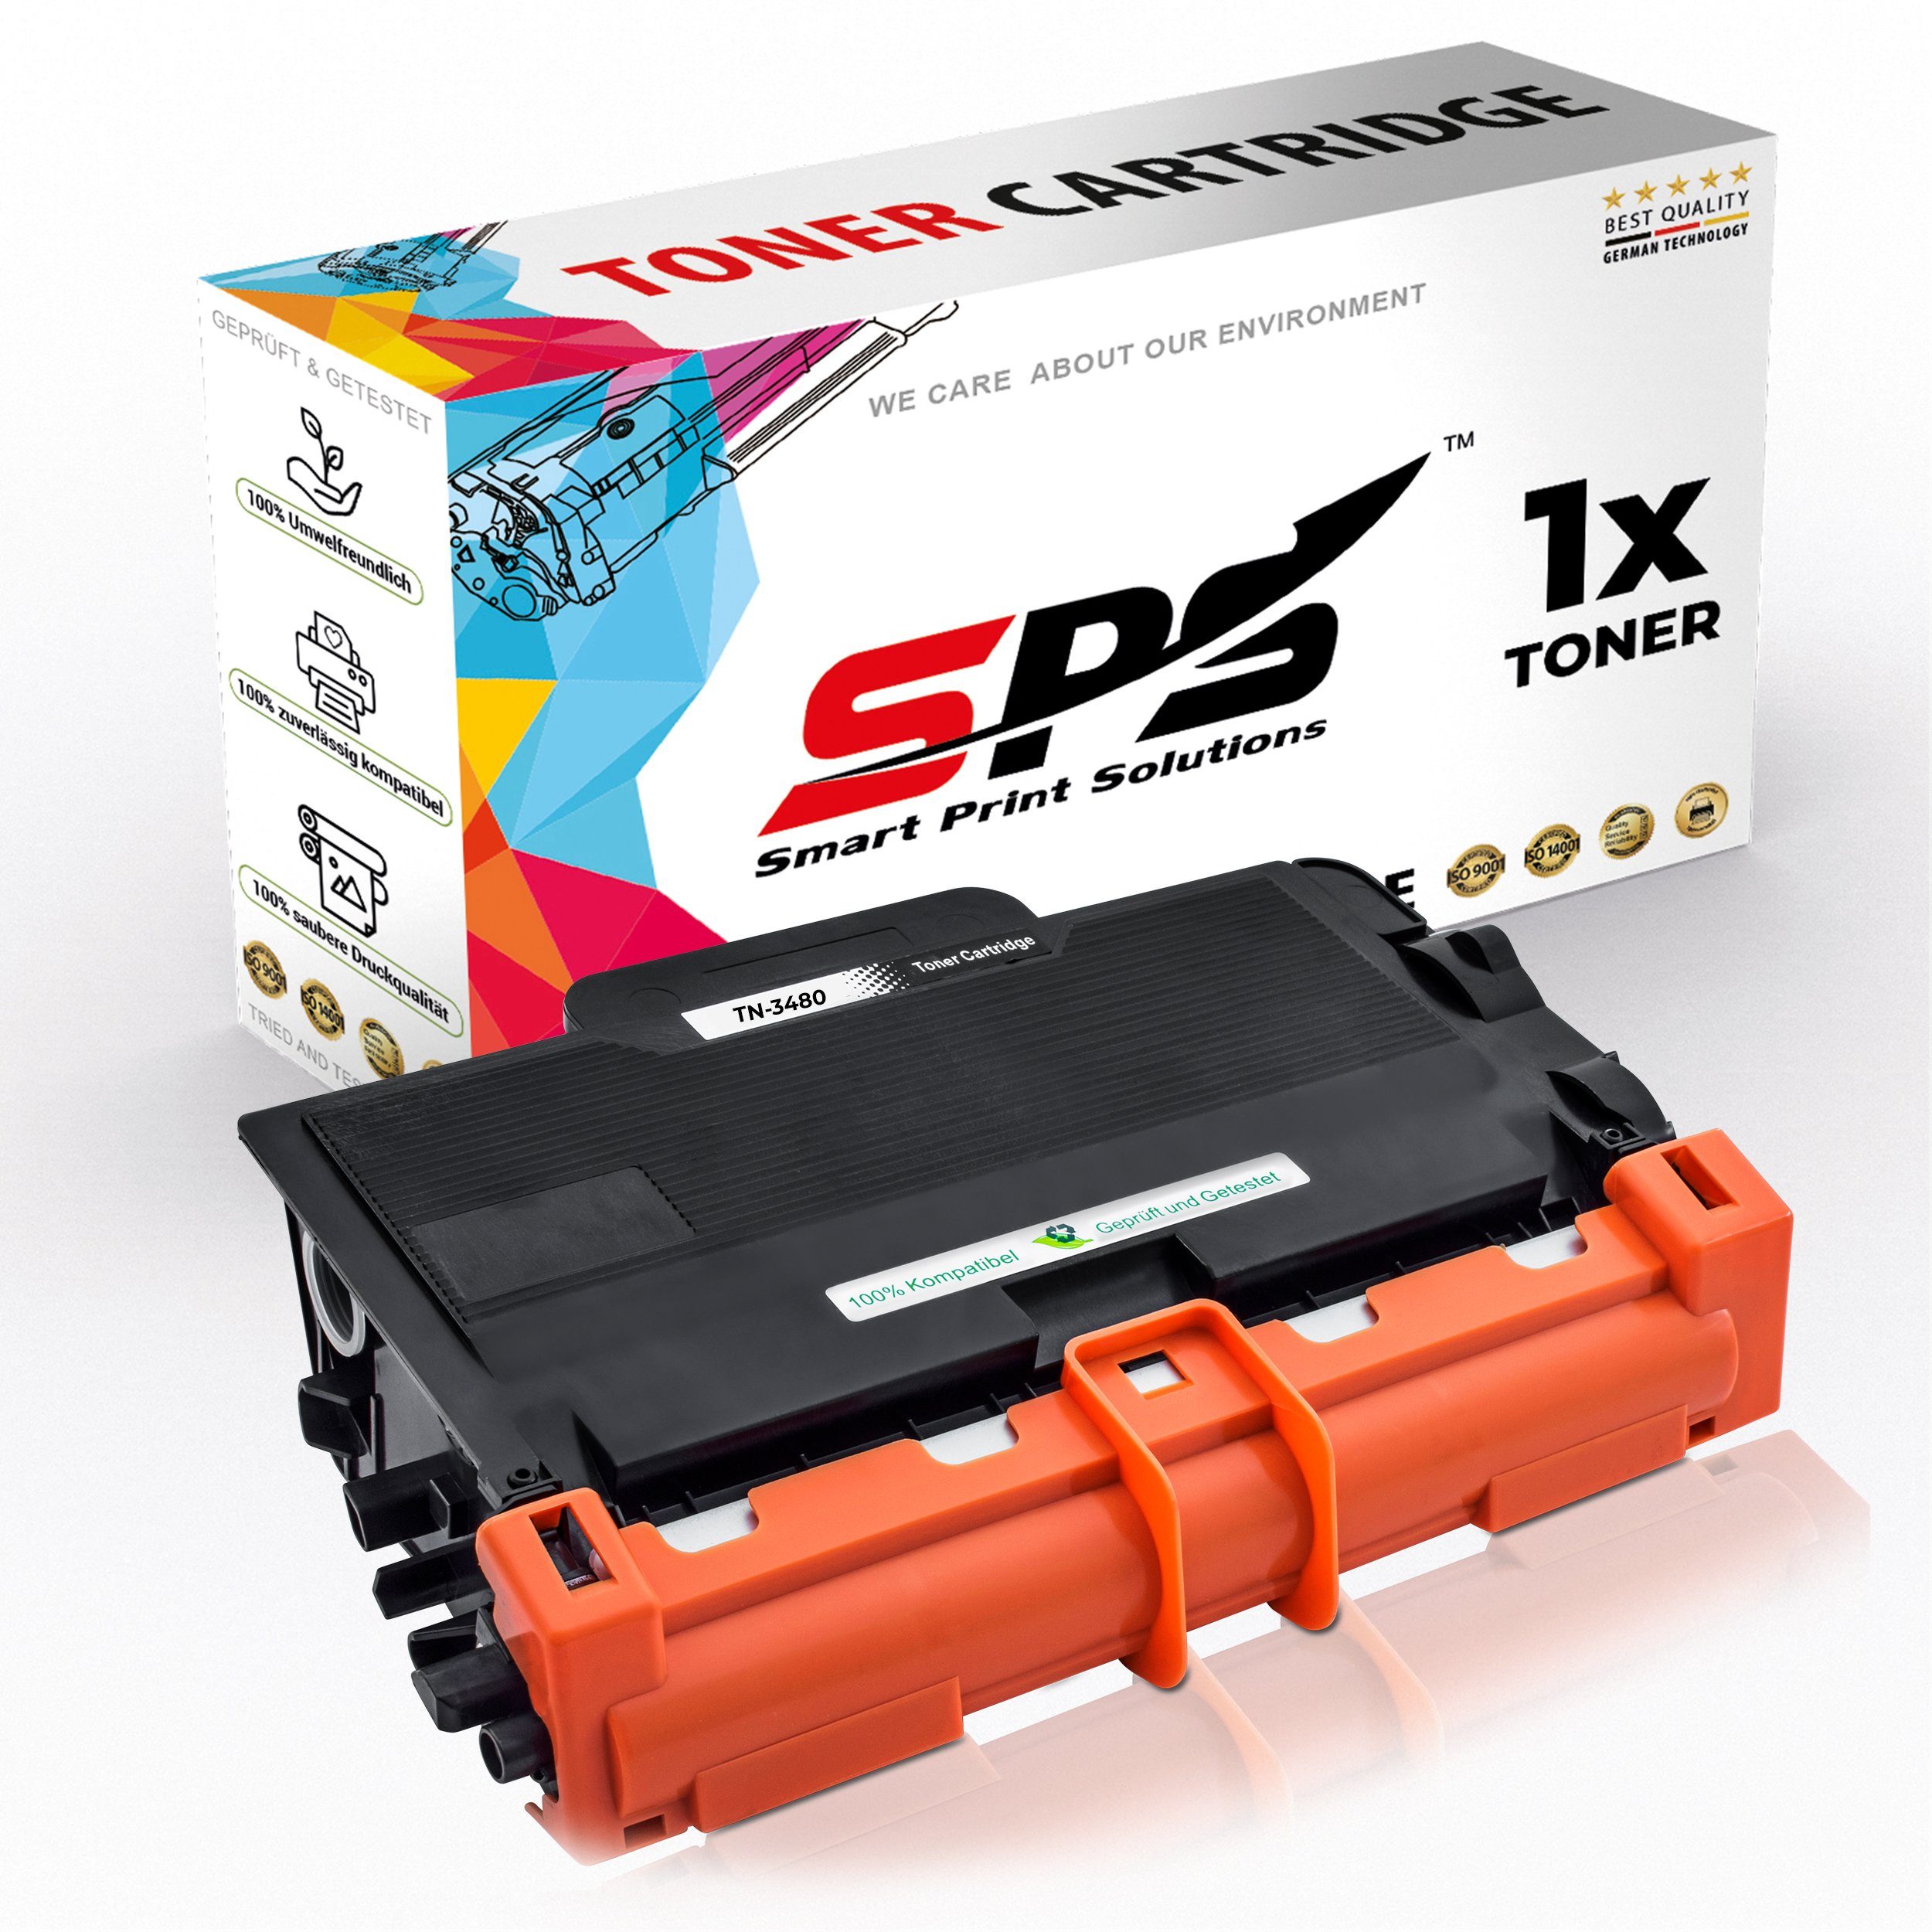 SPS Tonerkartusche Kompatibel für Brother HL-L5000 TN-3430, (1er Pack)